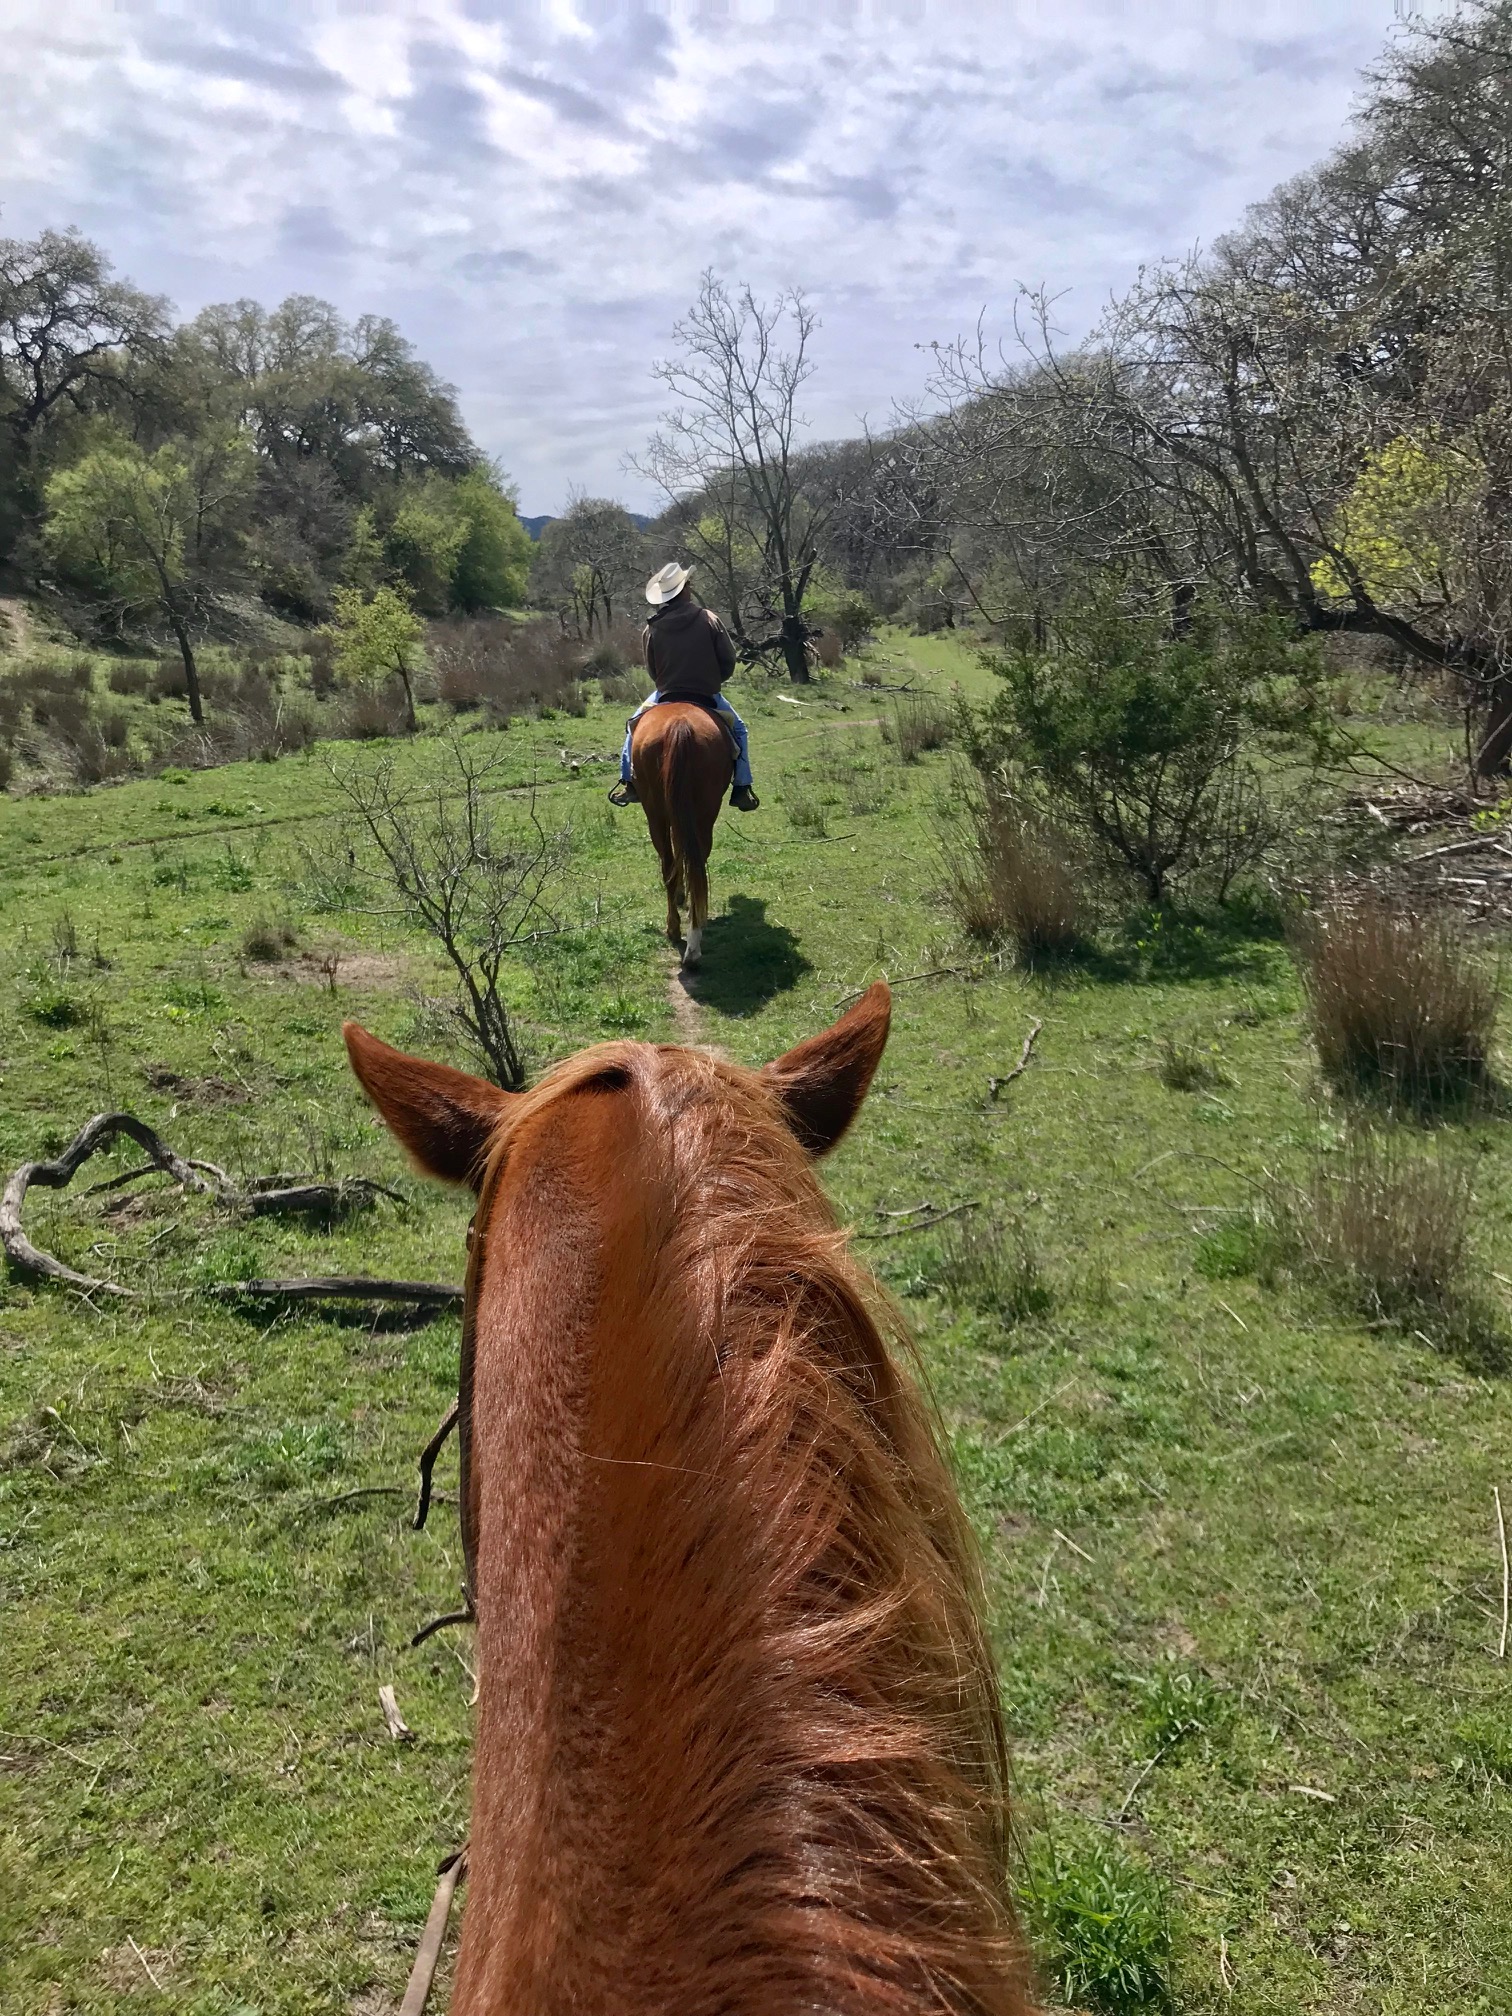 Mayan Dude Ranch Review Texas SF Travel Blogger Lorna Ryan Horses